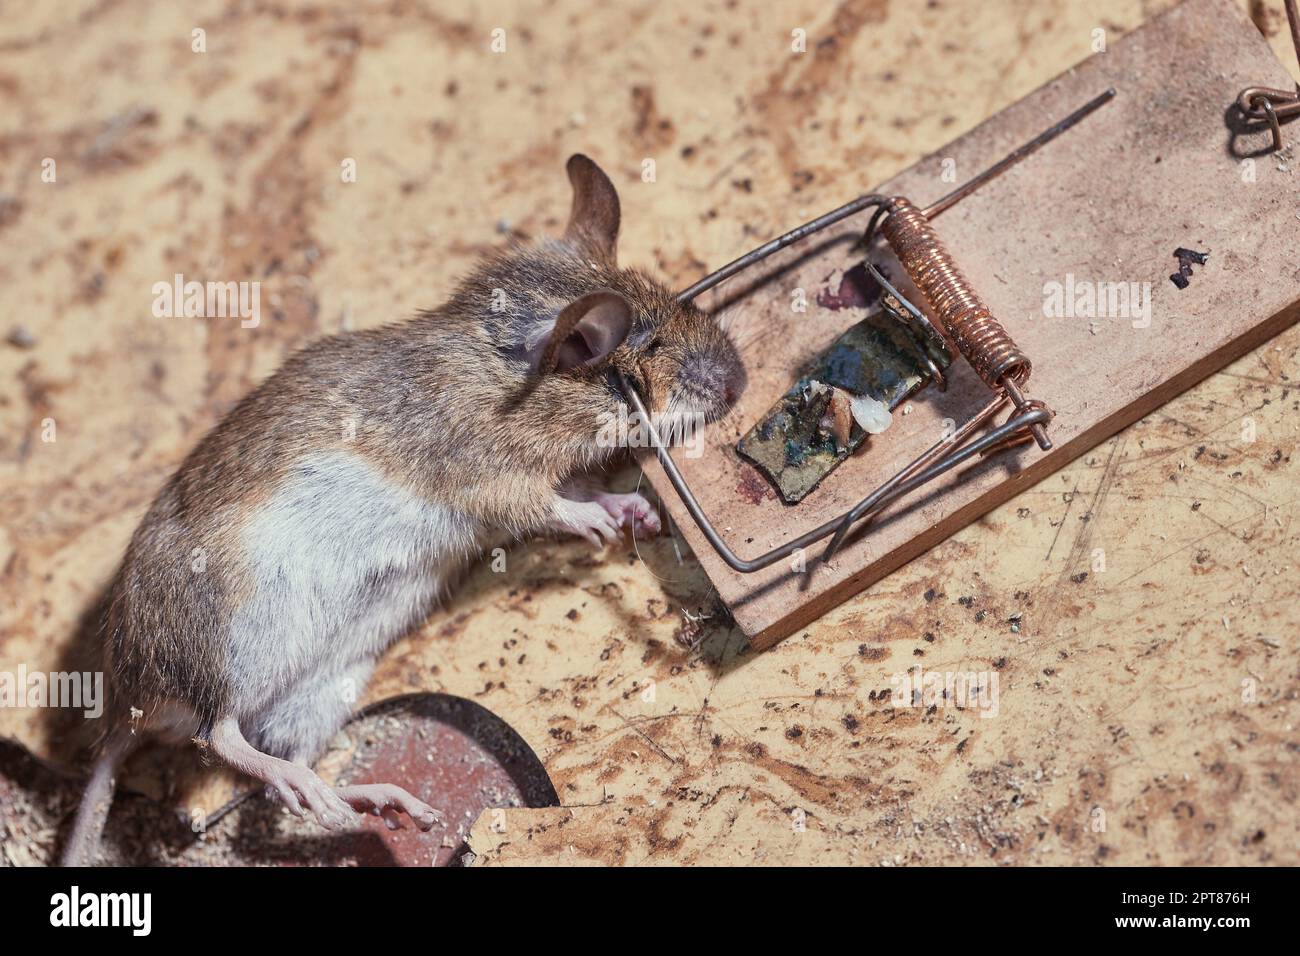 Die Maus ist in einer Falle auf dem Dachboden gefangen Stockfotografie -  Alamy